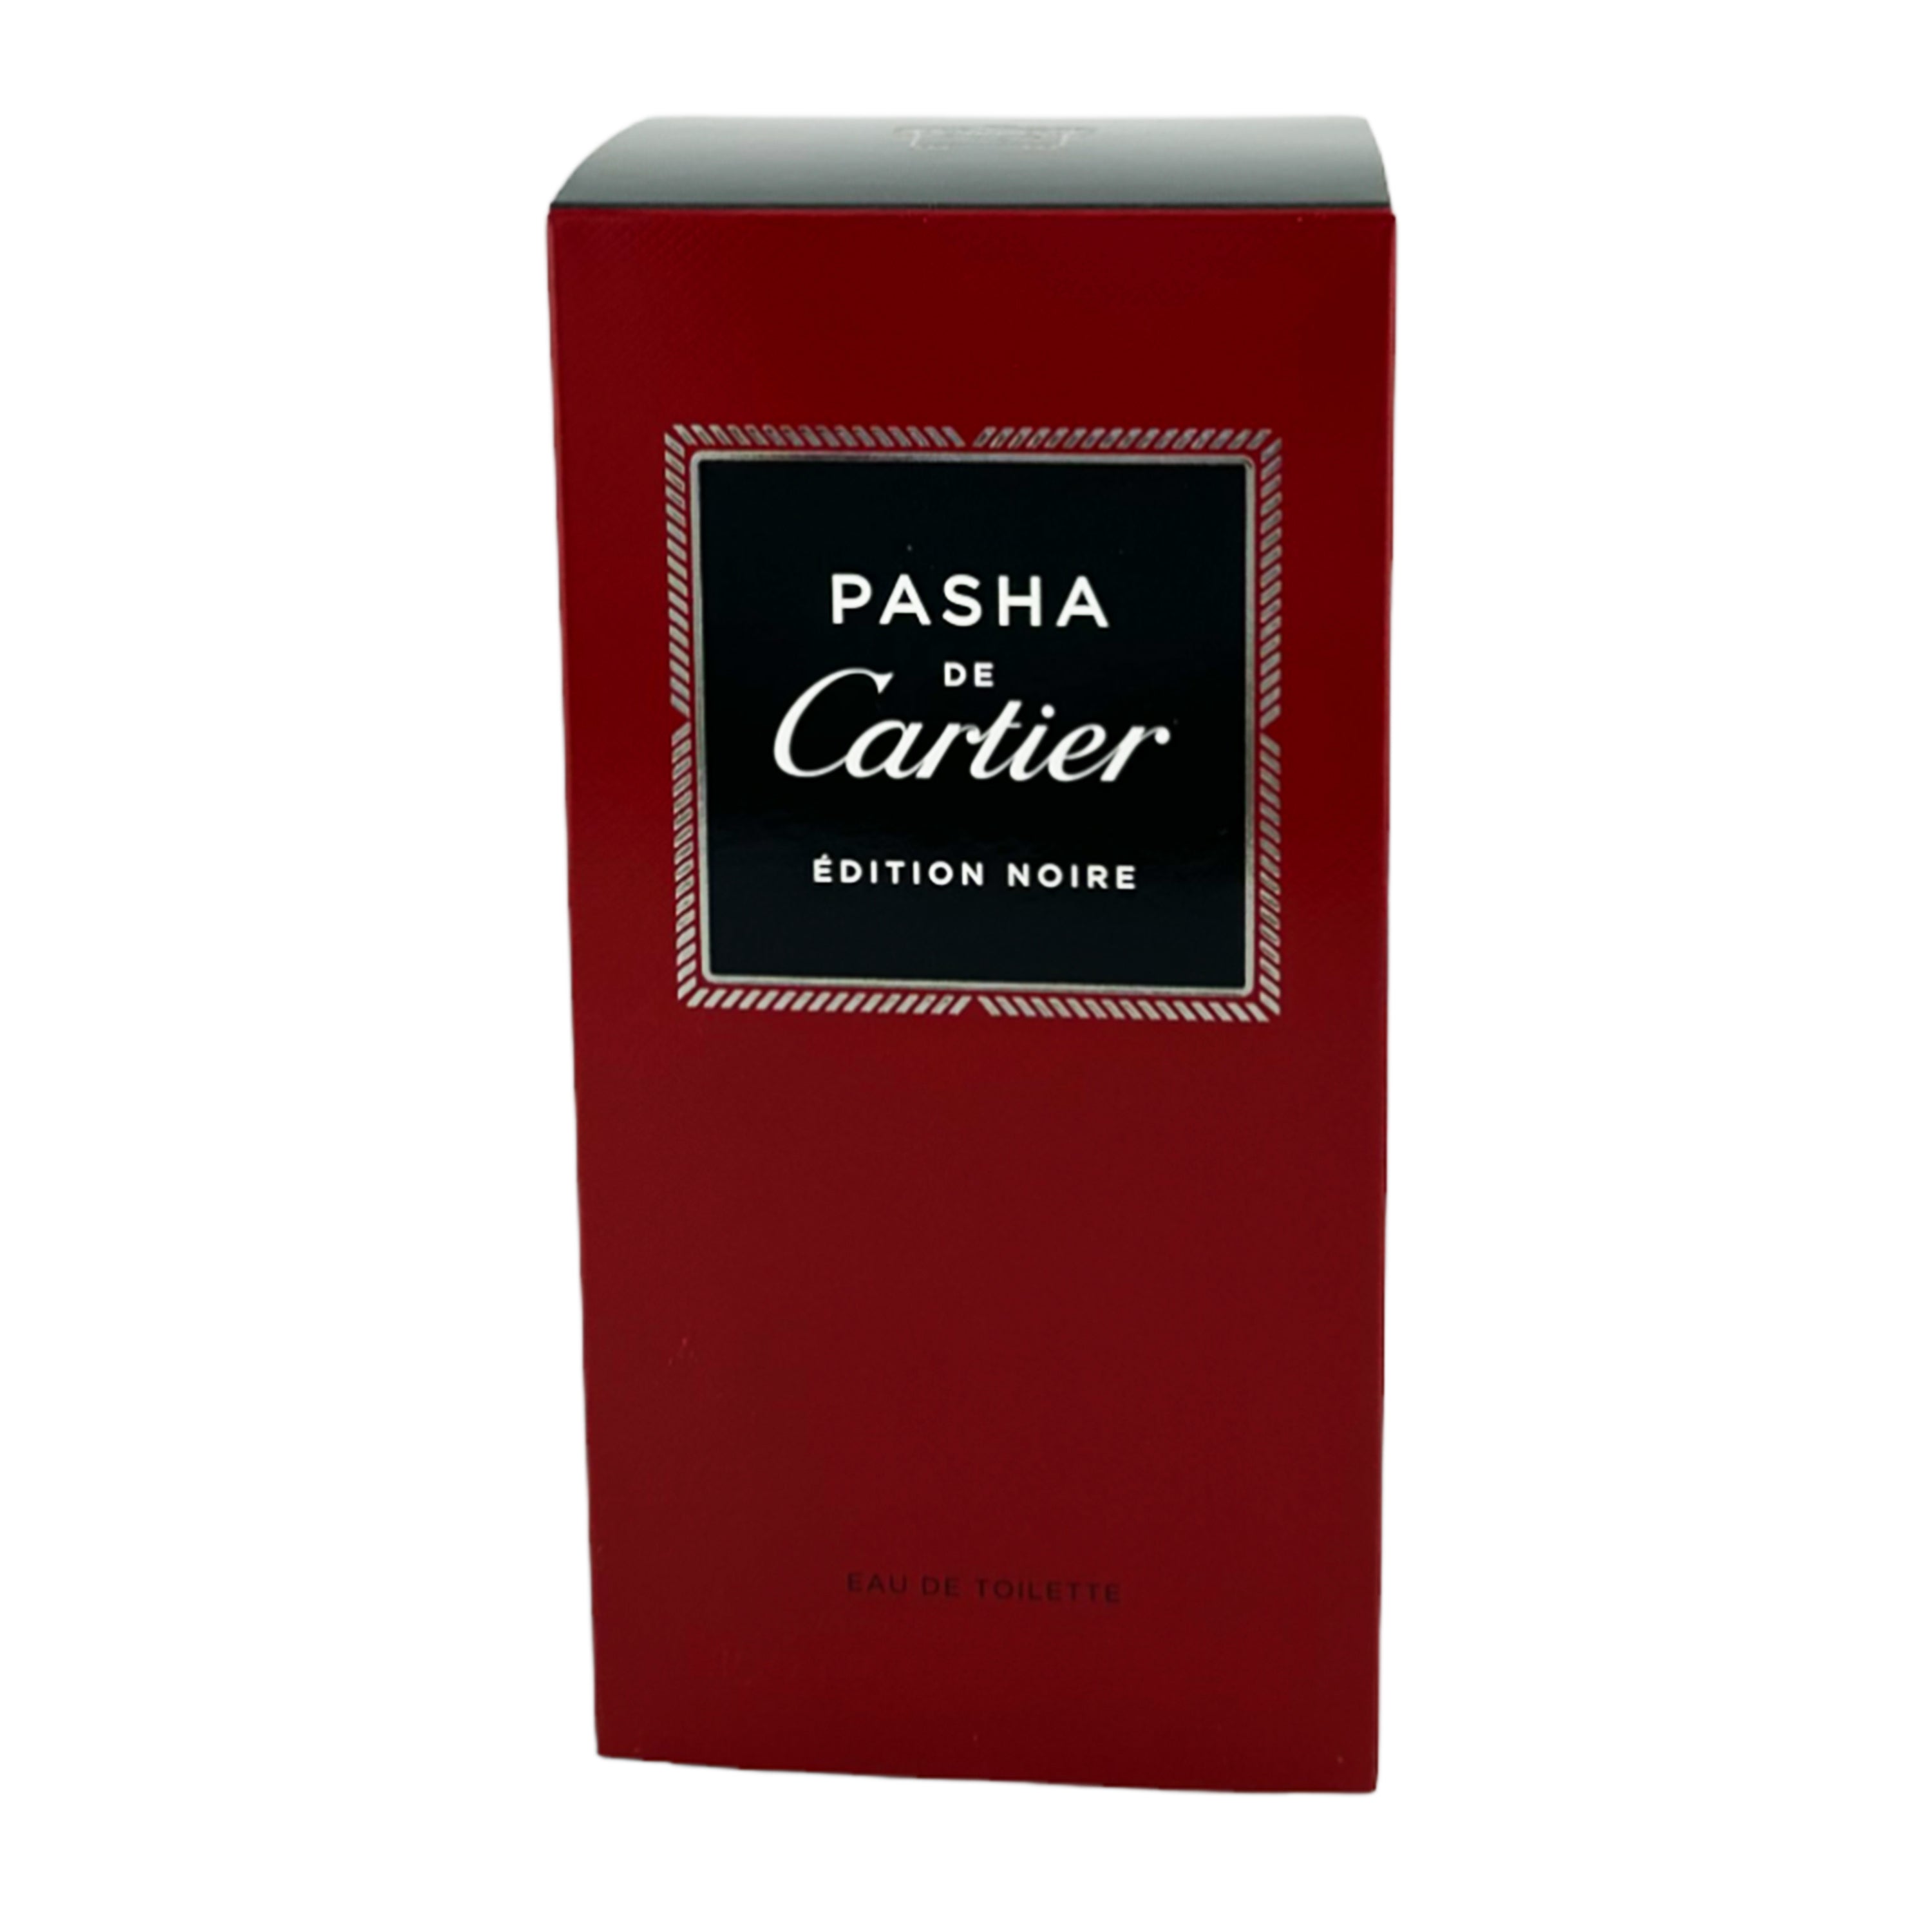 Cartier Pasha de Cartier Edition Noire Eau de Toilette for Men